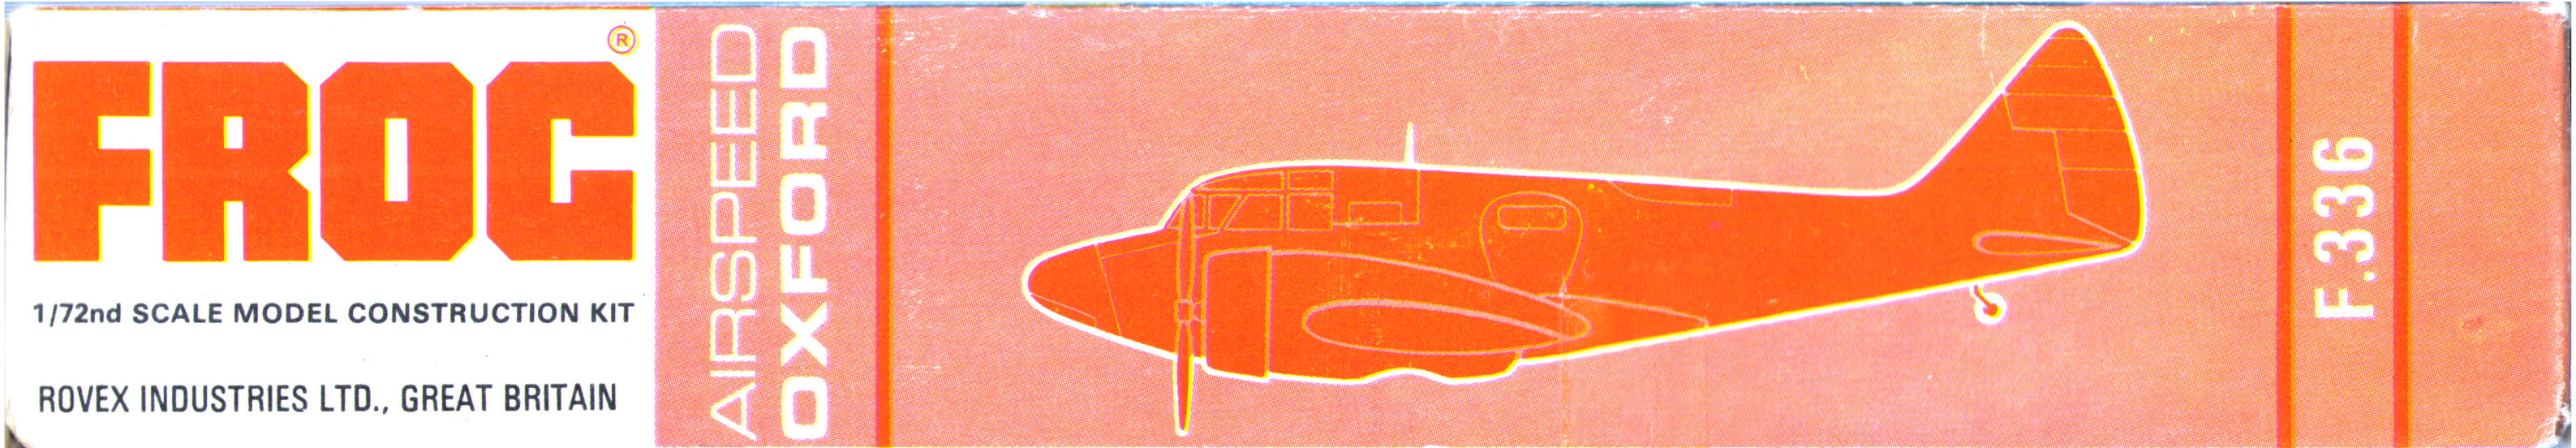 Верх коробки FROG 336P Airspeed Oxford Mk.II Trainer, IMA 1963, clamshell type box